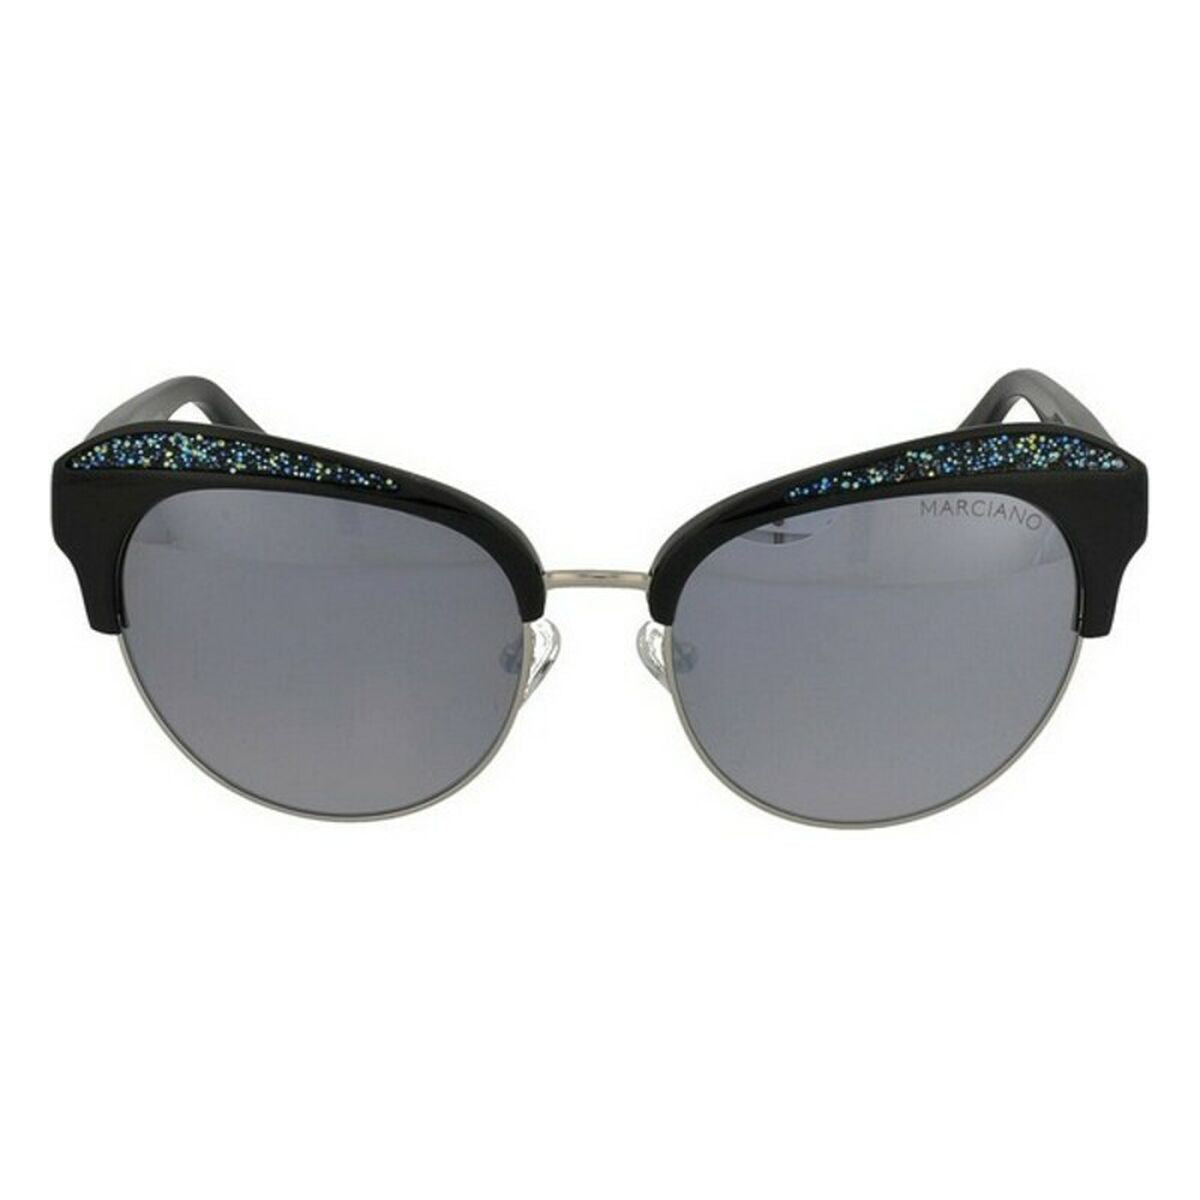 Kaufe Damensonnenbrille Guess Marciano GM0777-5501C bei AWK Flagship um € 57.00